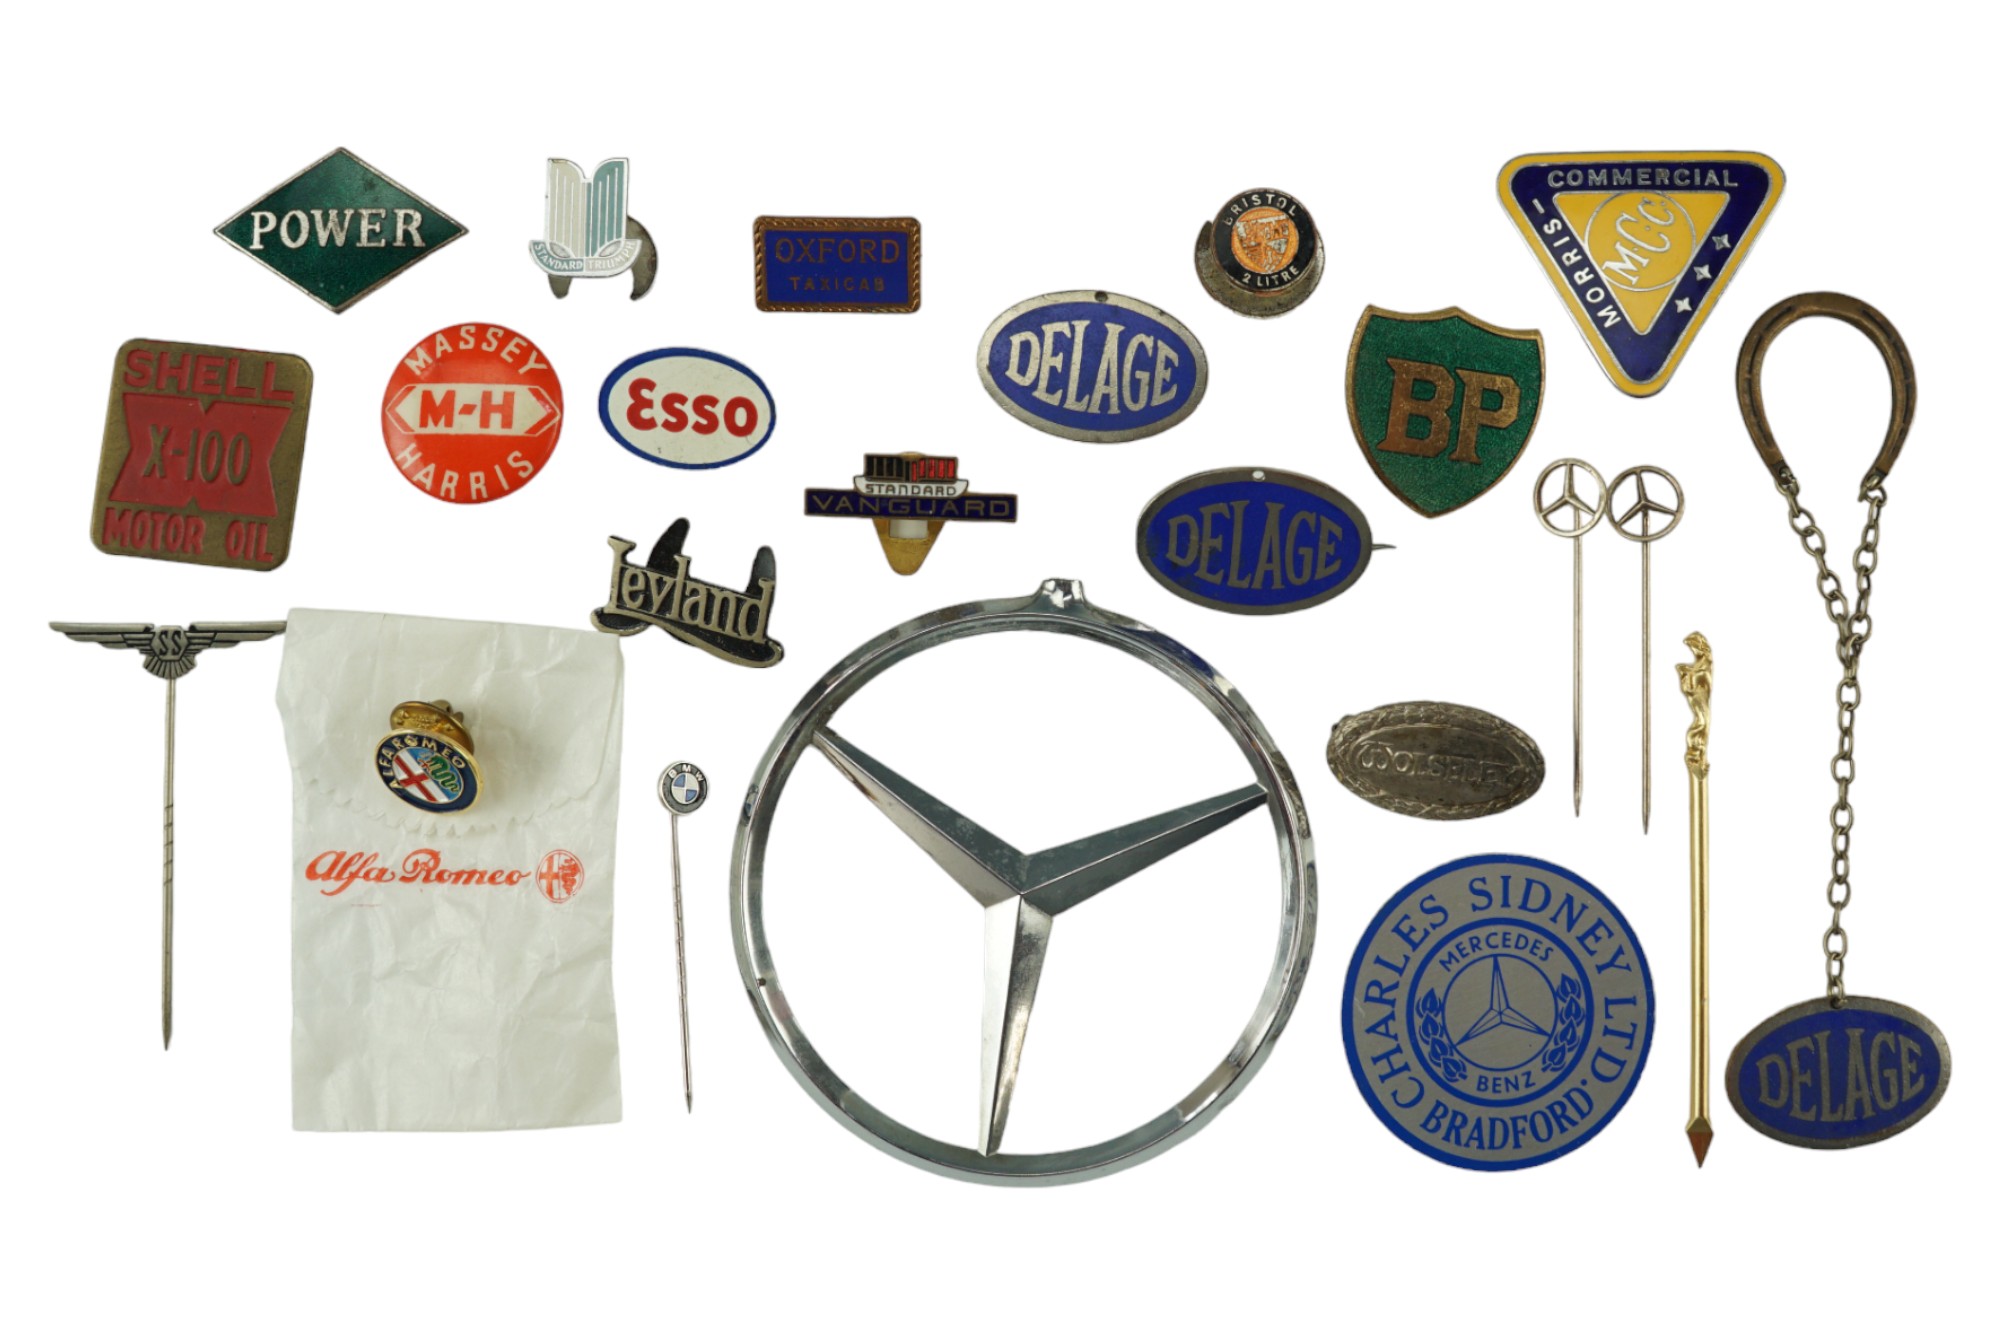 A collection of vintage automotive lapel badges etc including SS Jaguar cars, Mercedes, Massey-